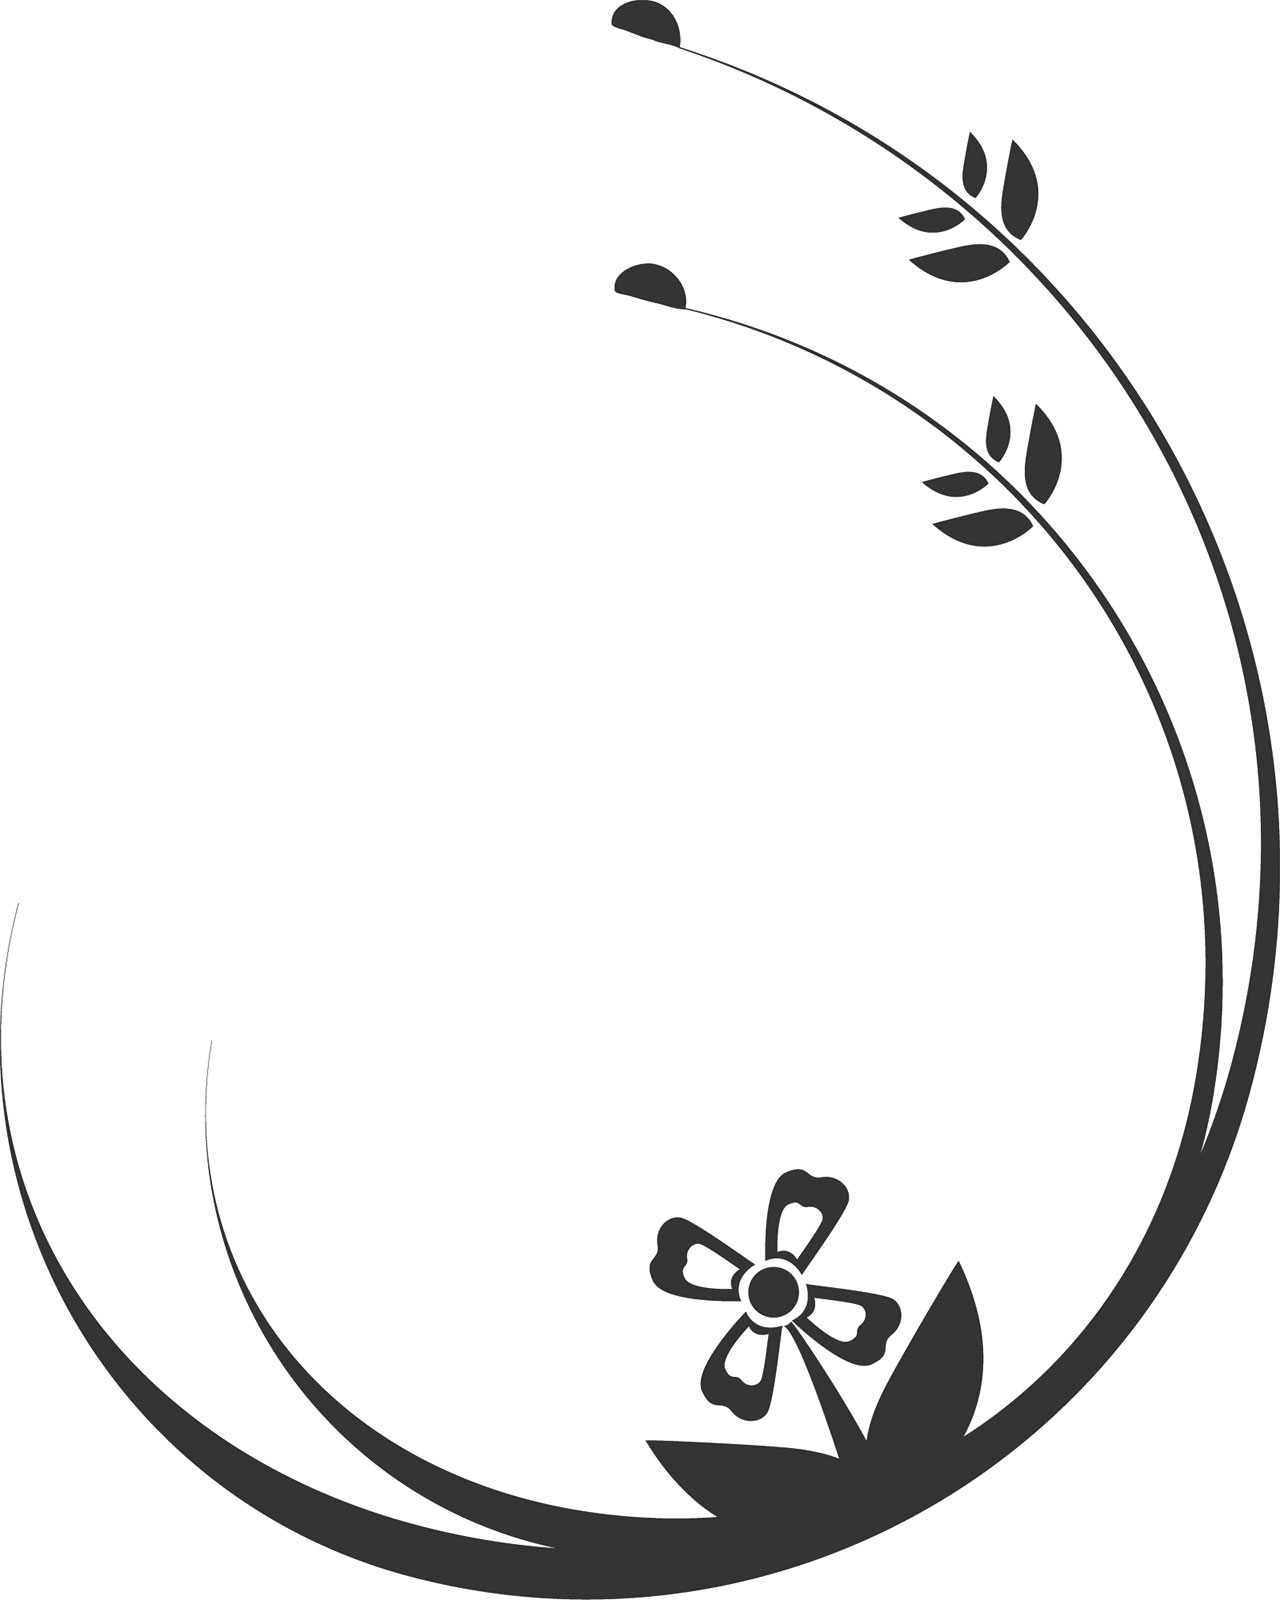 花のイラスト フリー素材 白黒 モノクロno 521 白黒 茎葉 半円